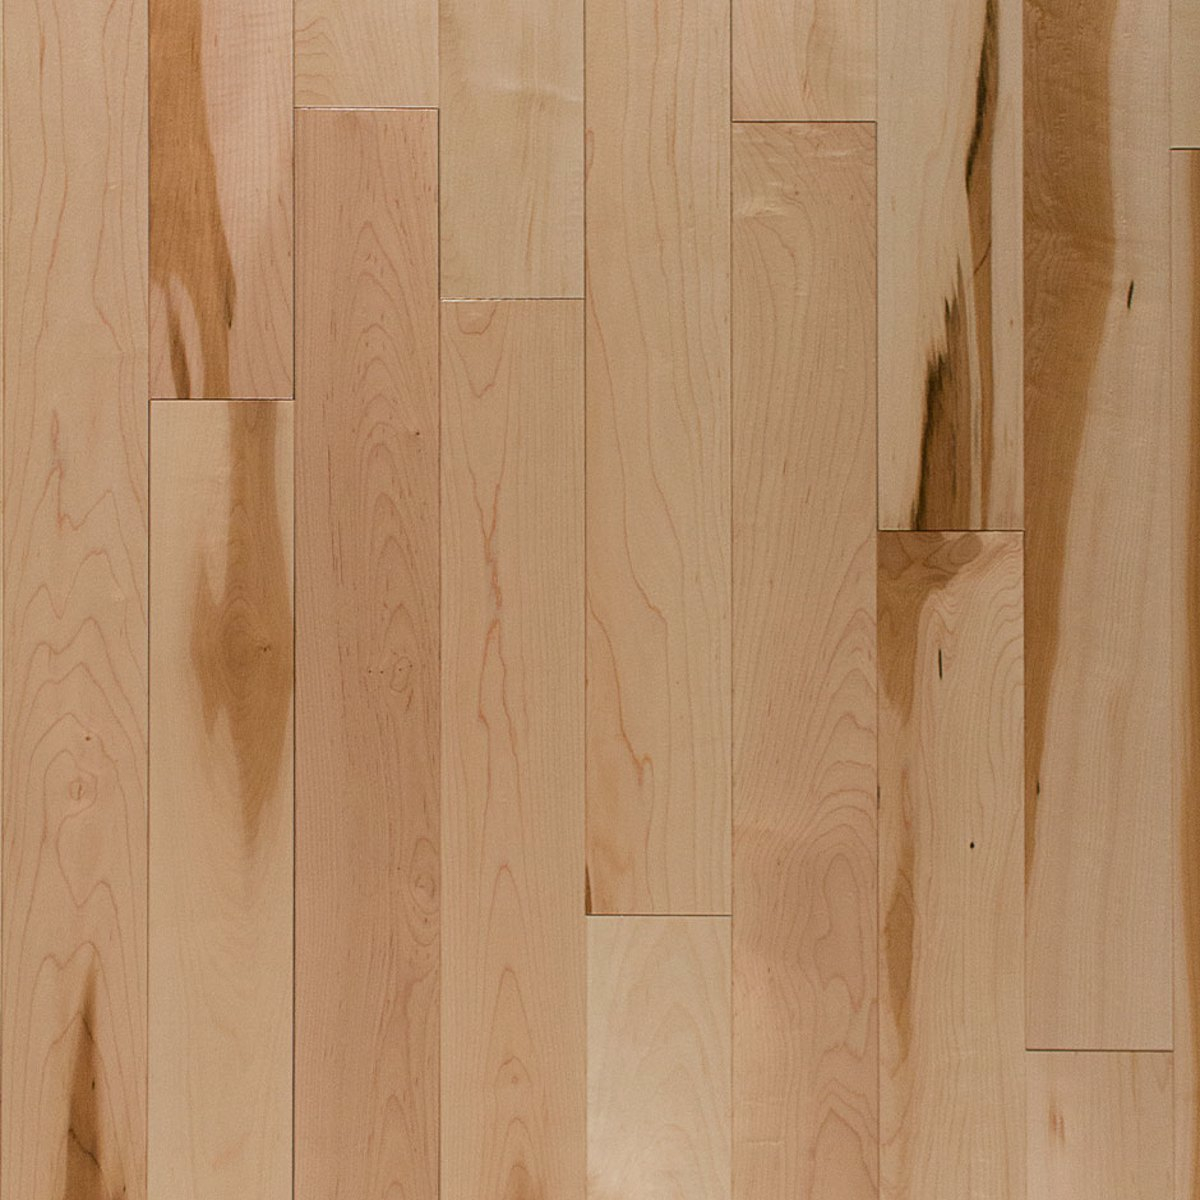 Canadian Hard Maple Wickha Barewood 3 1, Maple Hardwood Flooring Images